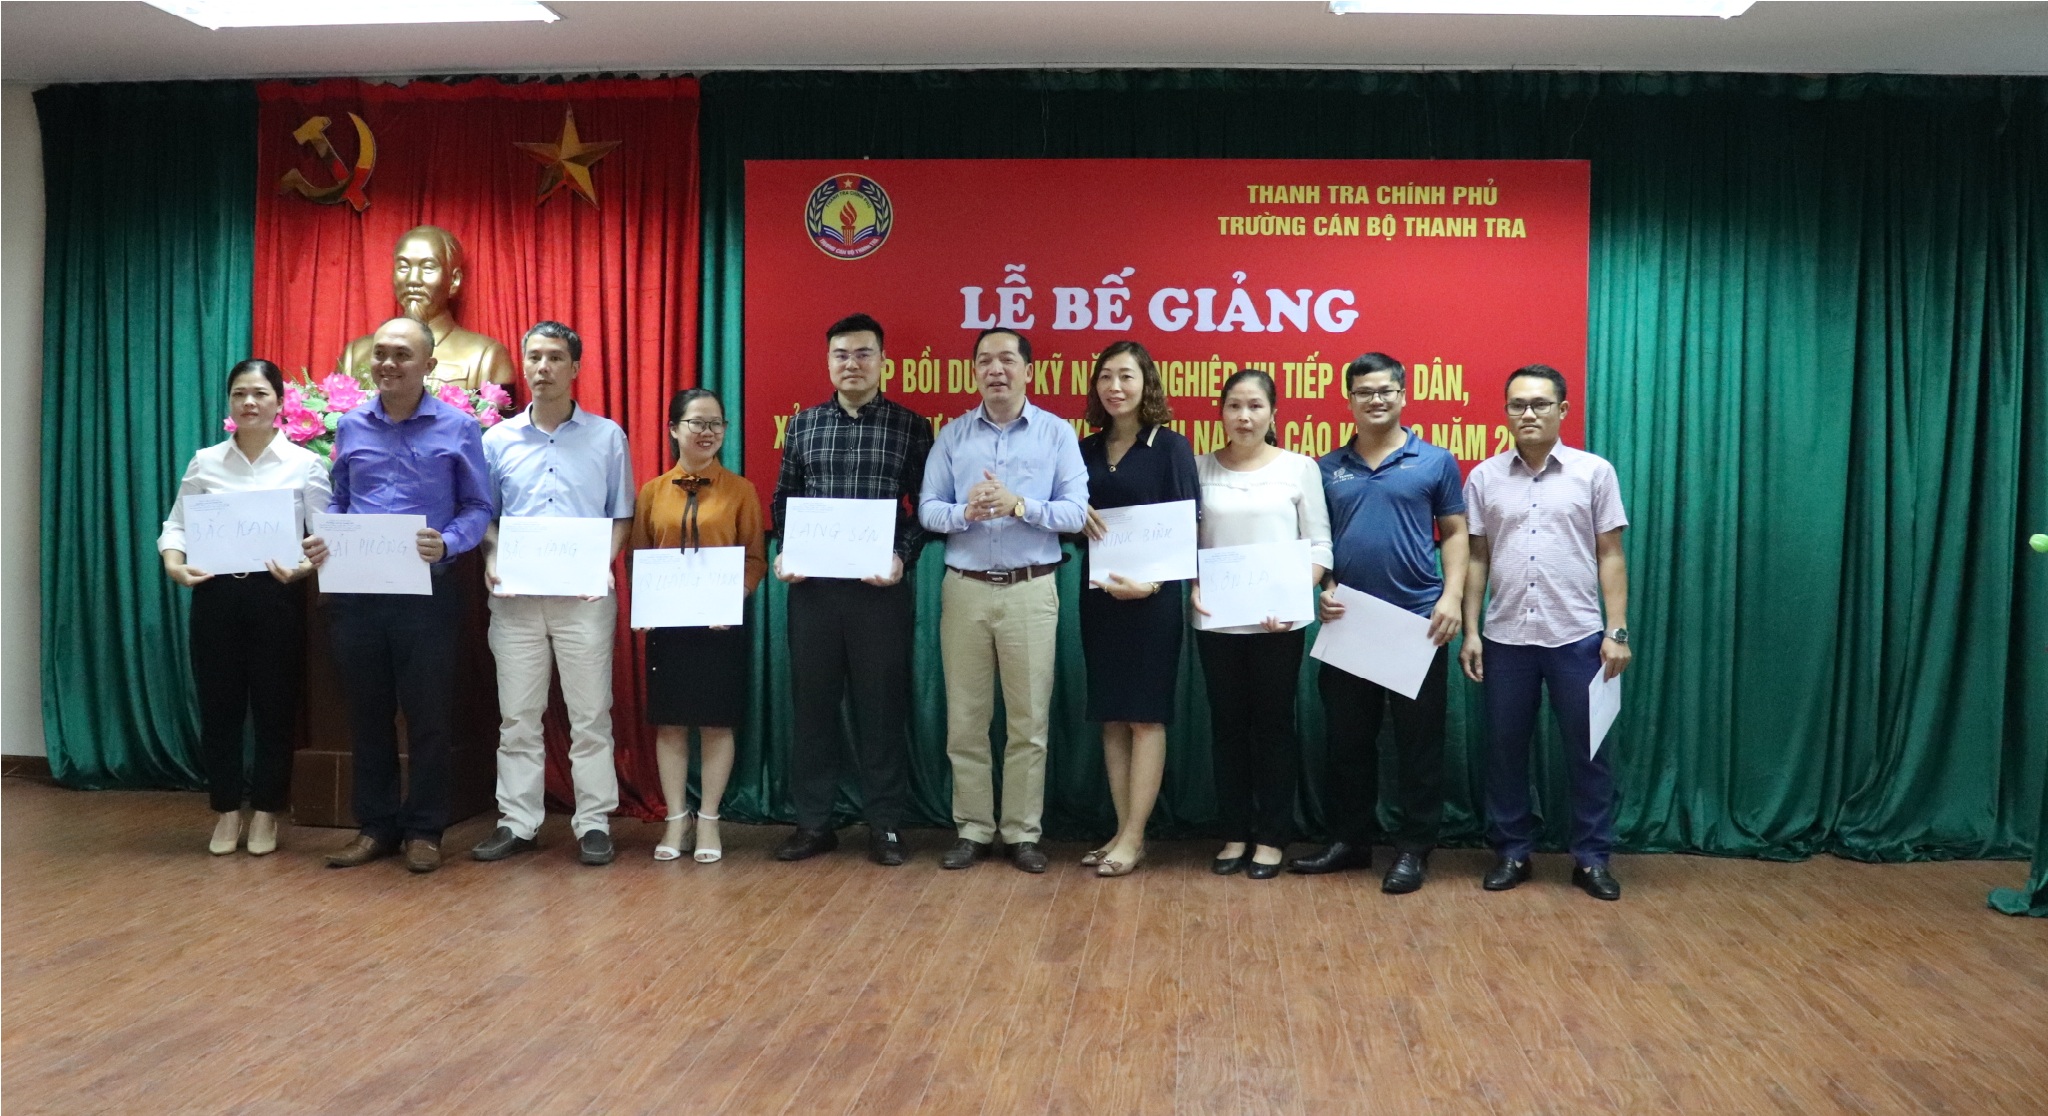 TS Nguyễn Huy Hoàng TTVCC Phó Hiệu trưởng trg CBTT trao chứng nhận cho học viên